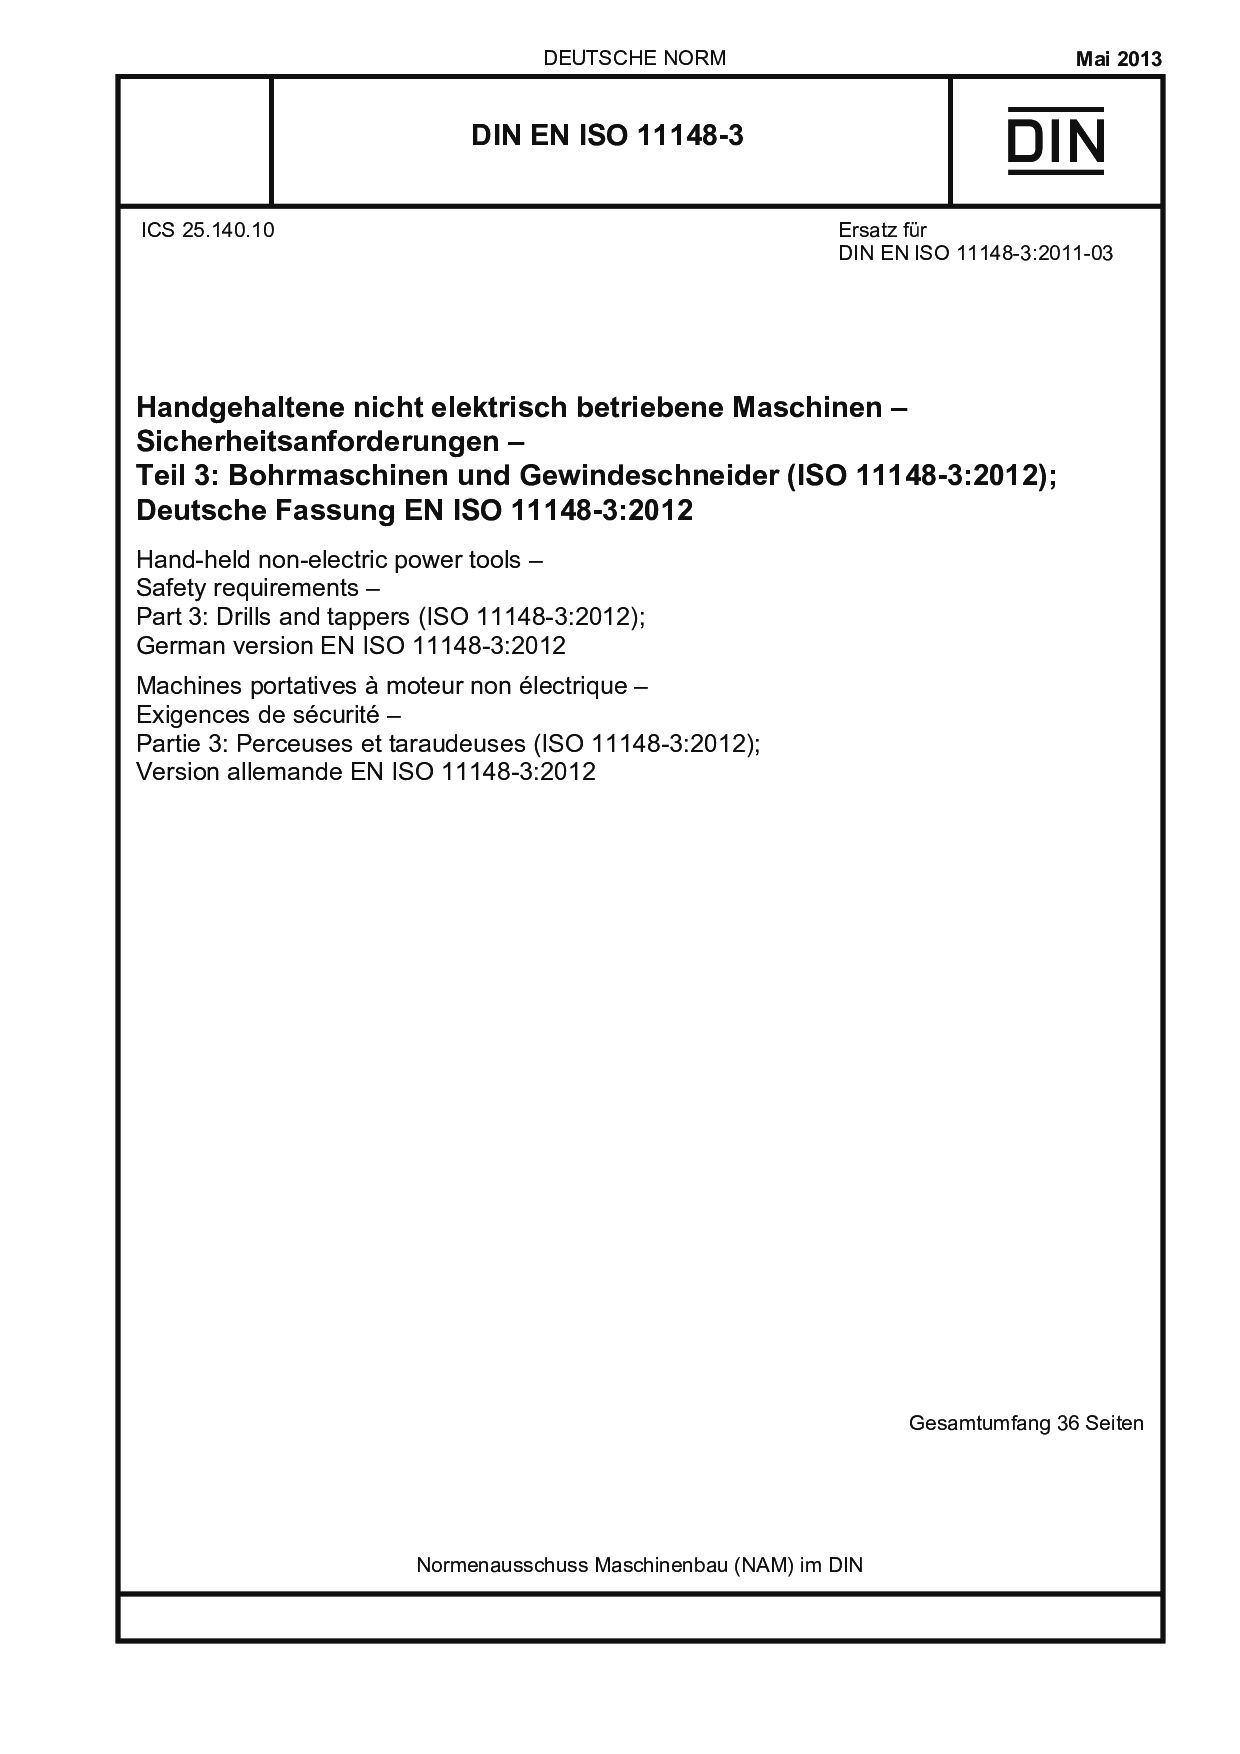 DIN EN ISO 11148-3:2013